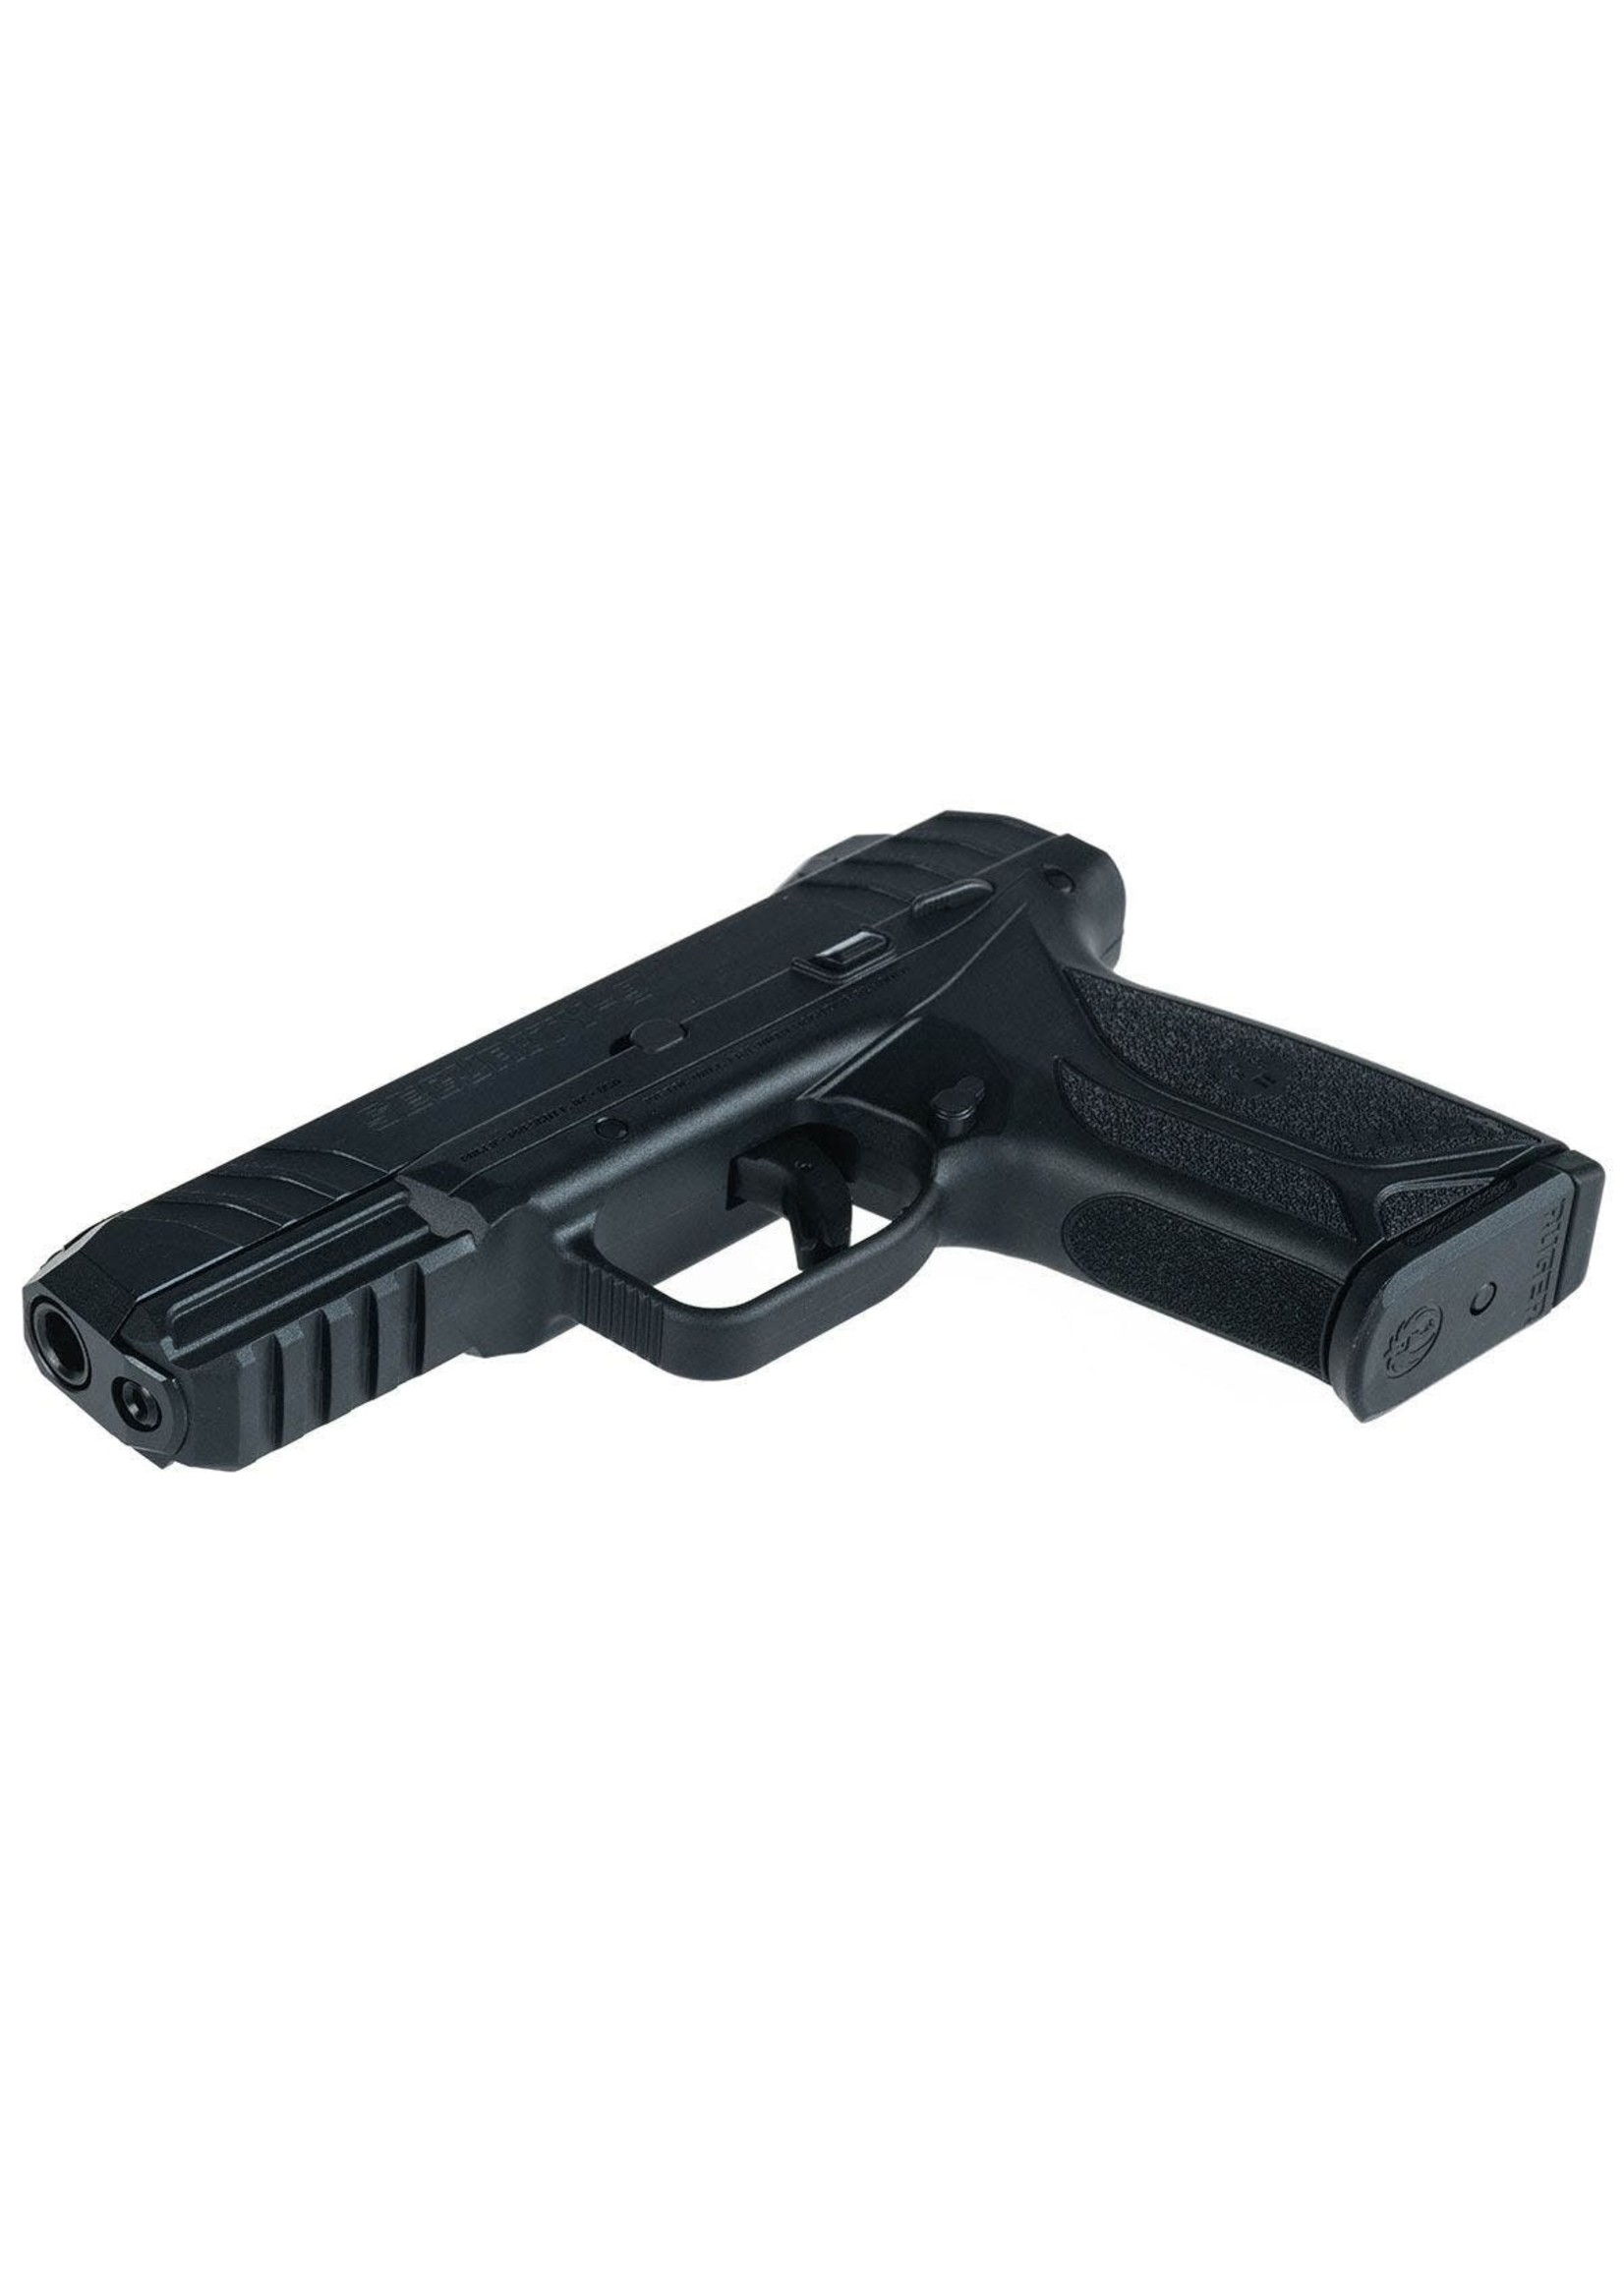 Ruger CLEARANCE Ruger Security 9 Pistol, 9mm, 4", 15+1 Black